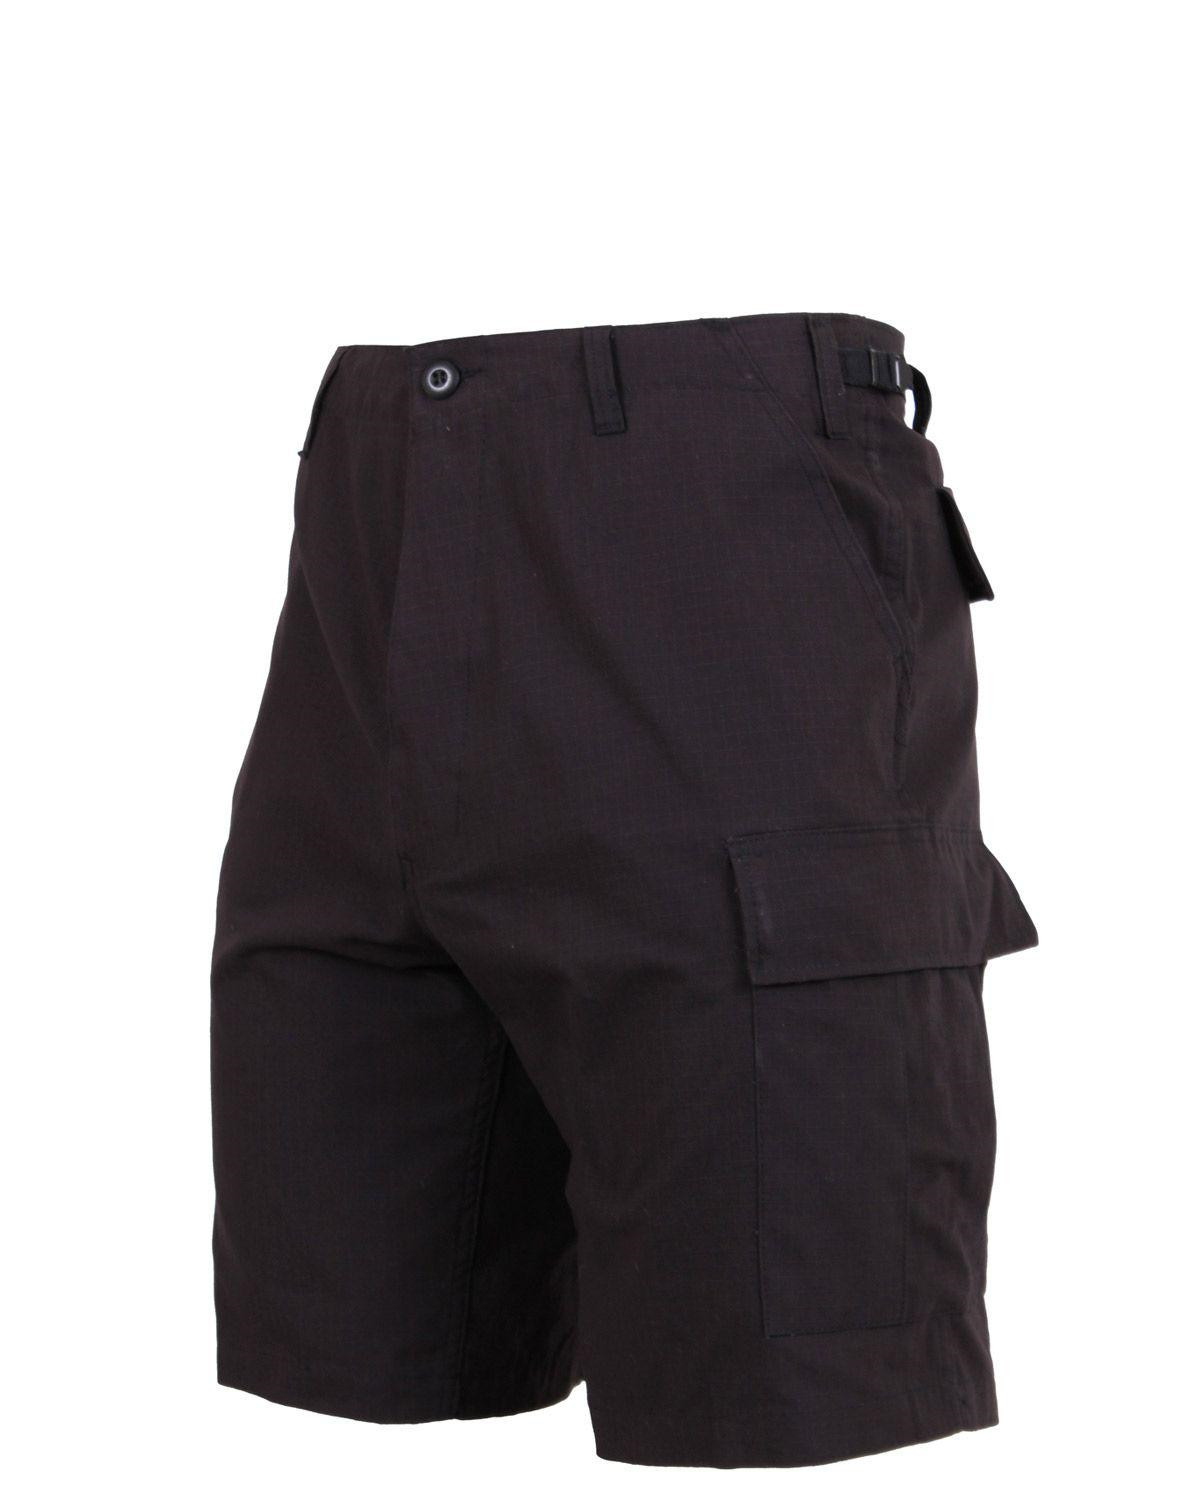 Rothco BDU Shorts i Rip-Stop (Sort, Large / 35"-43")